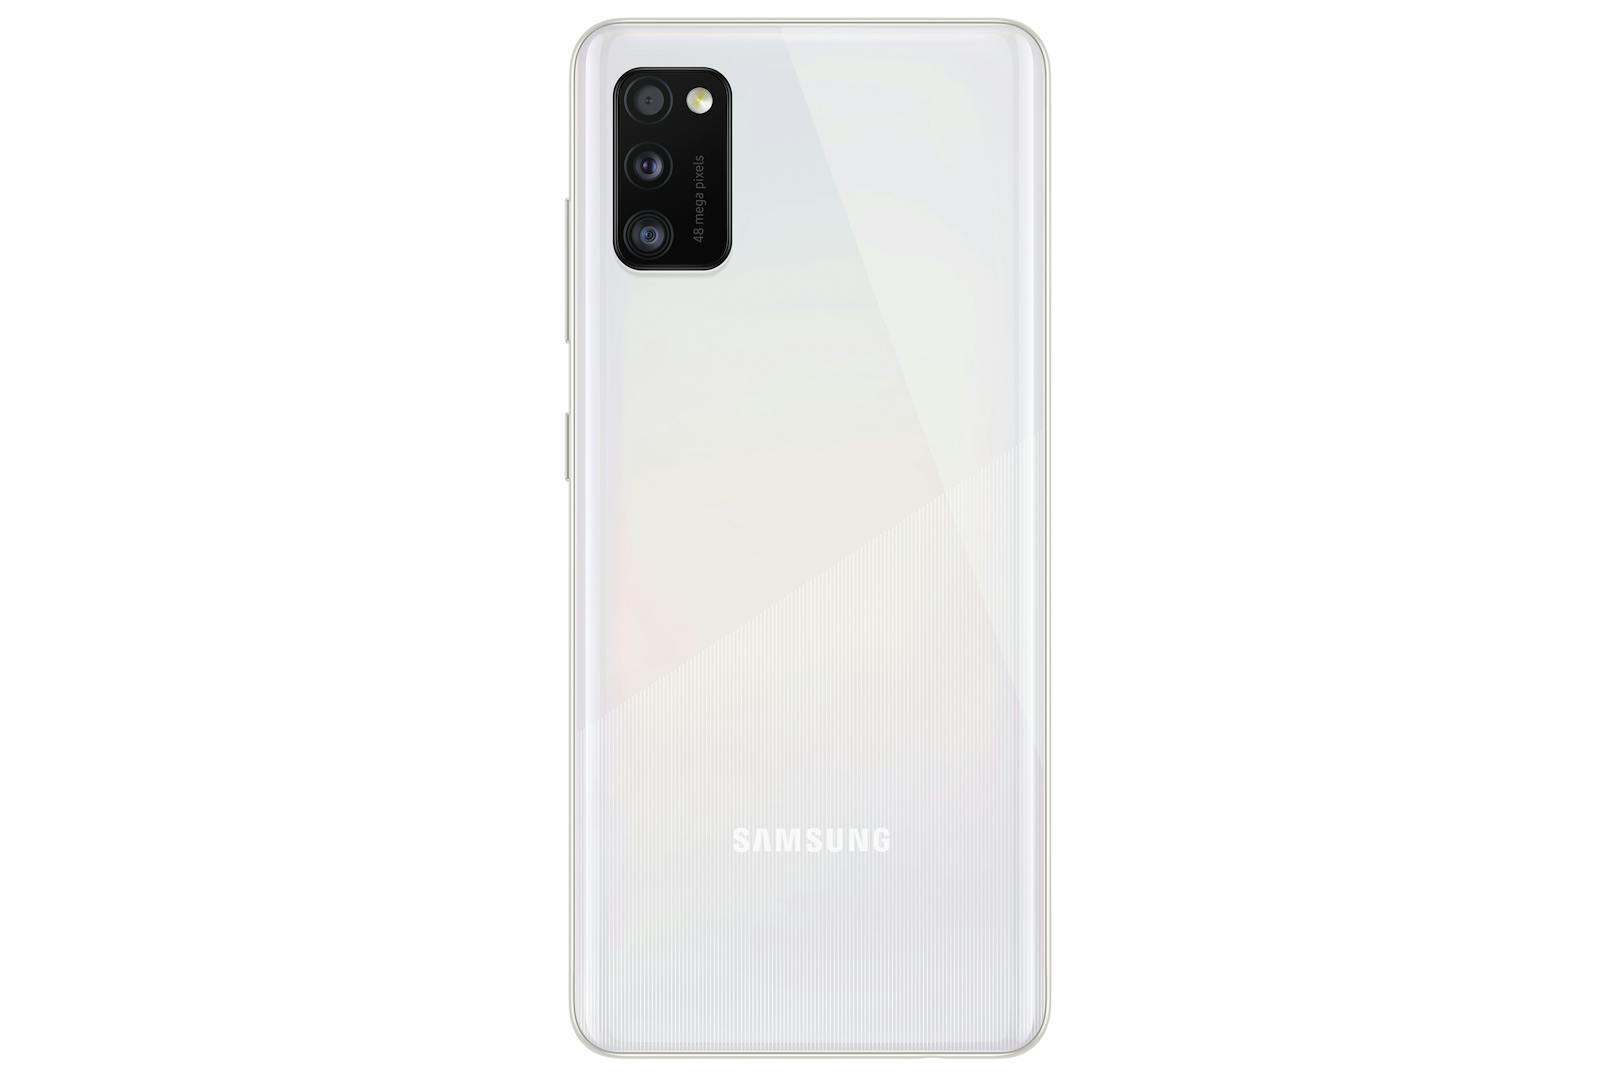 Ab 22. Mai 2020 ist das neueste Smartphone der Galaxy-A Serie in drei verschiedenen Farben in Österreich um 299 Euro erhältlich.